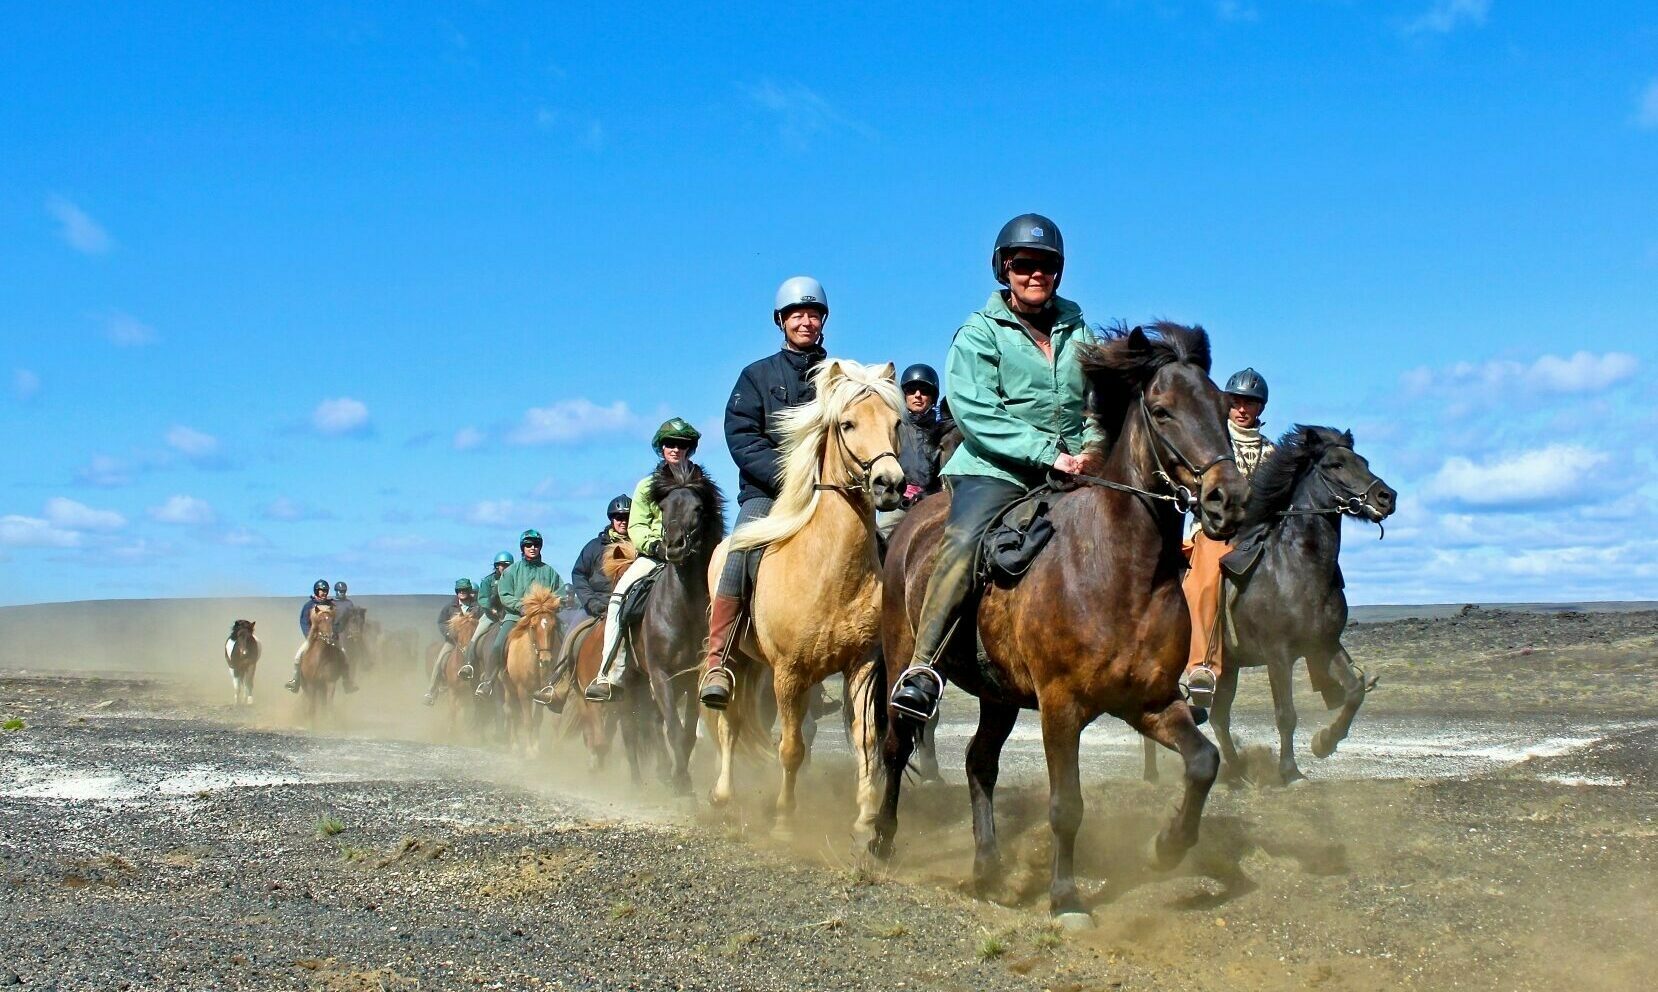 Reittour Islandpferde Islandreise;
Gruppe reitet in sortiert in Zweier-Reihe über karge Landschaft und wirbelt dabei Staub auf.